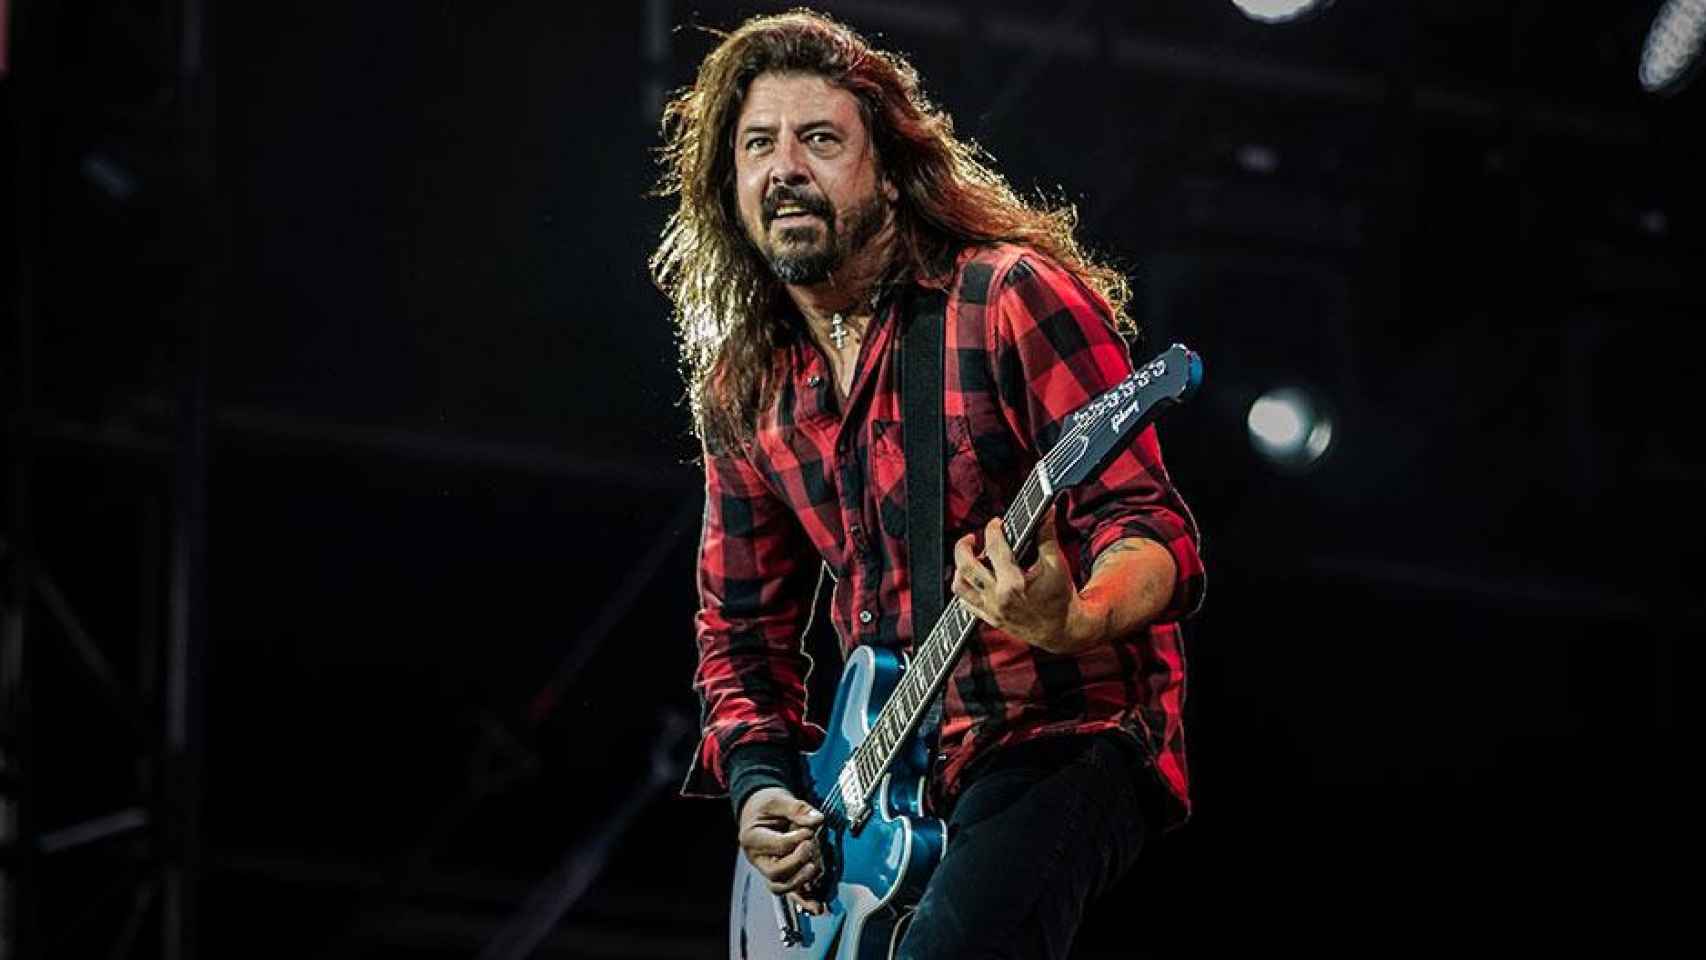 Dave Grohl, líder de Foo Fighters, durante una actuación / ANDREAS LAWEN - WIKIMEDIA COMMONS